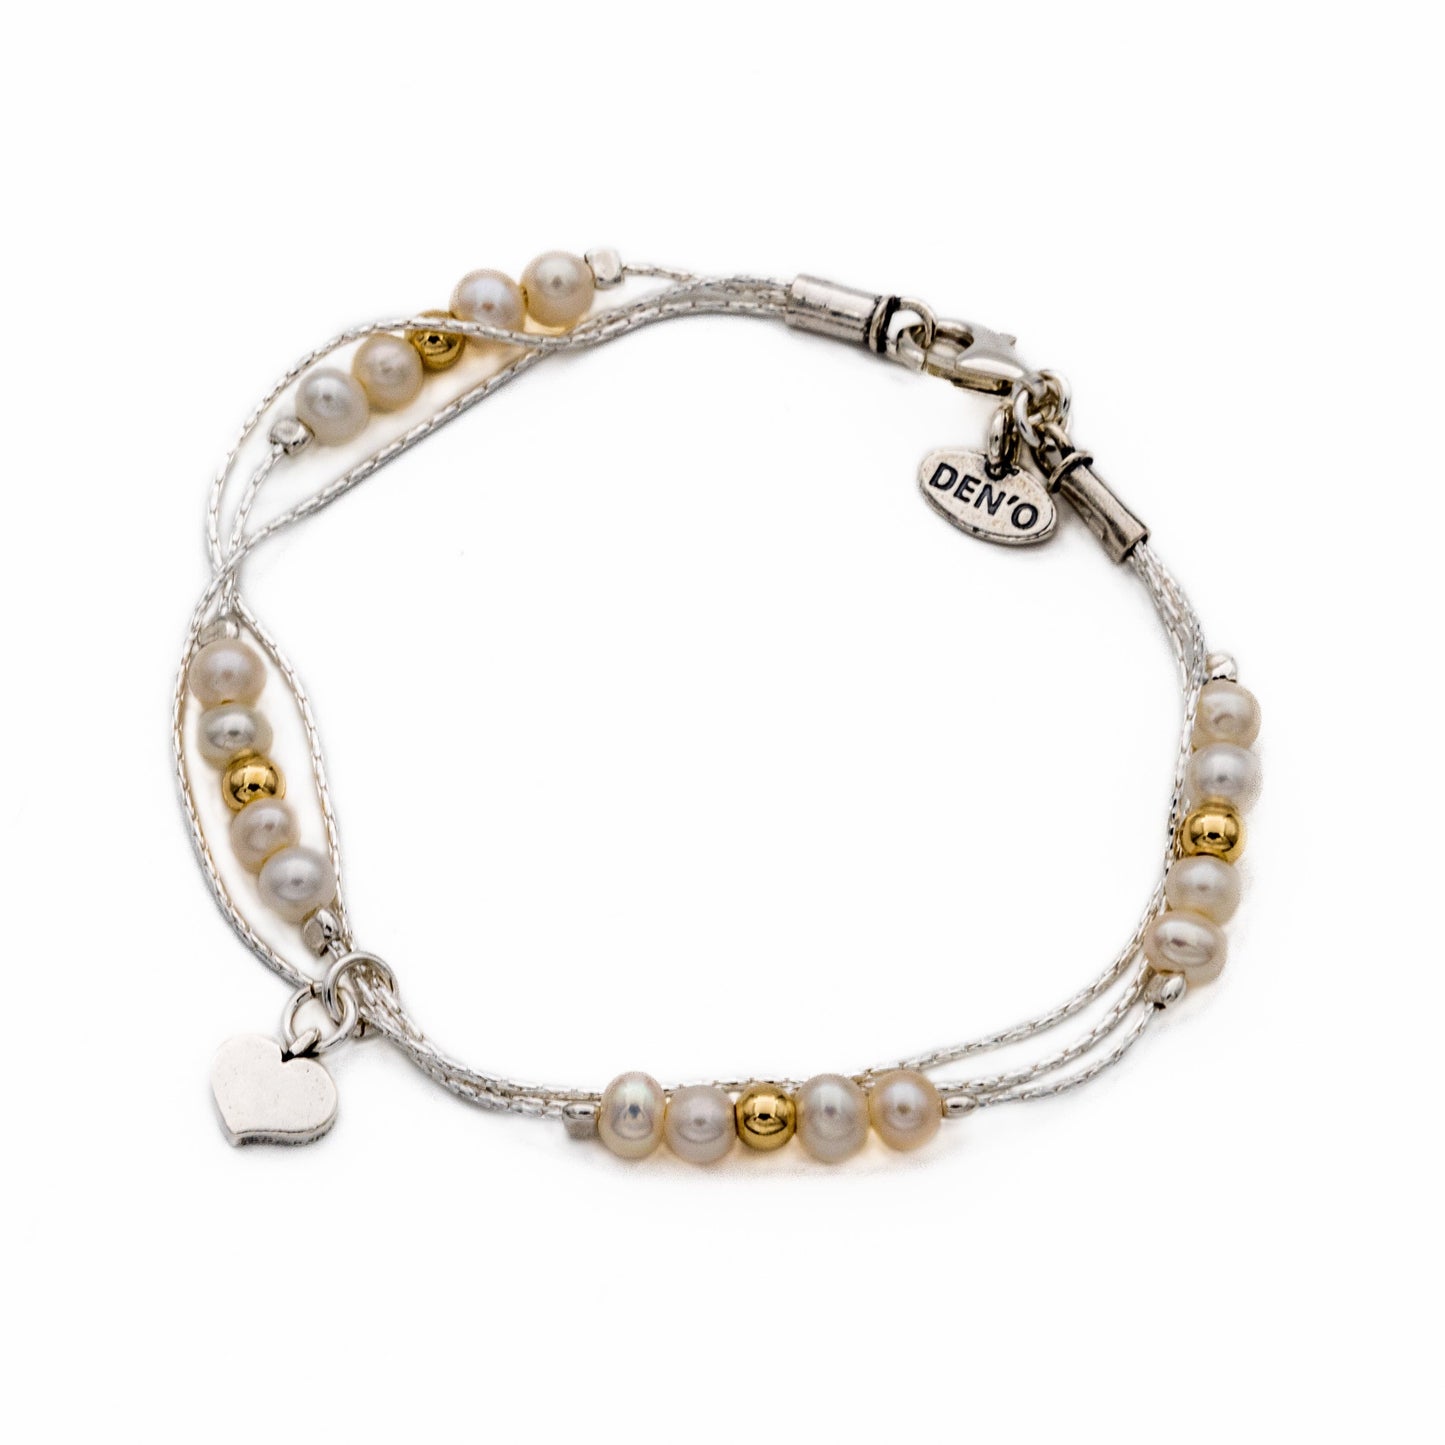 Silbernes Armband mit Perlen und vergoldetem 01B397PL